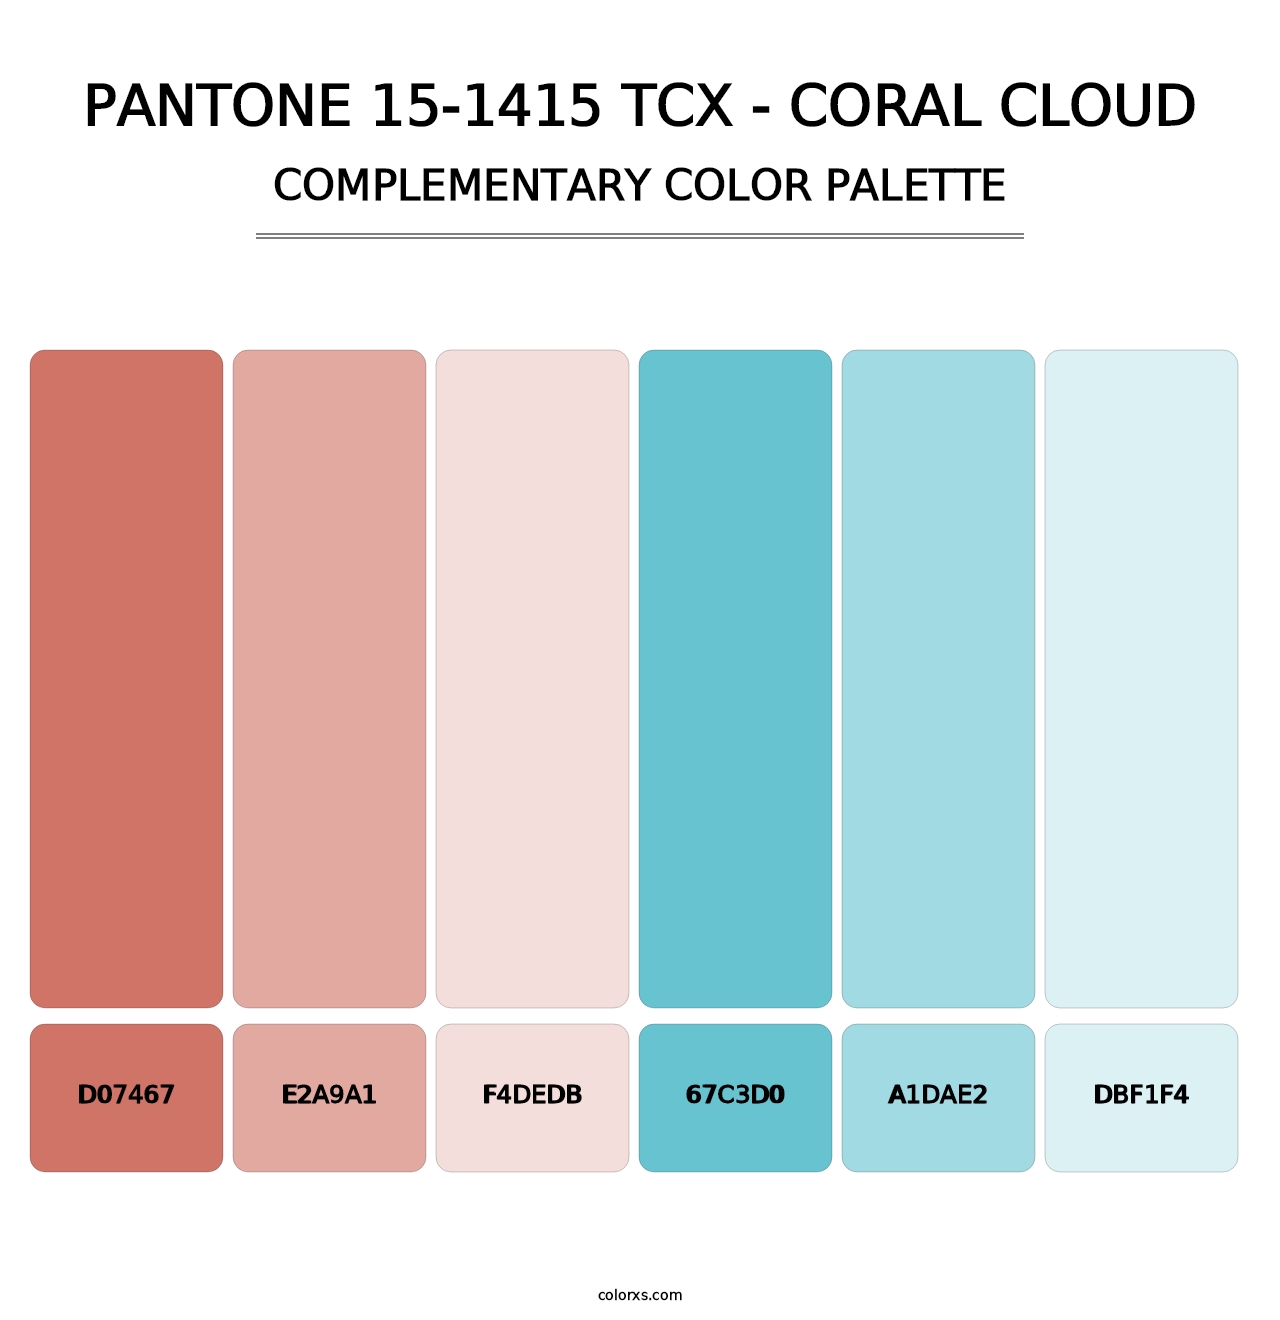 PANTONE 15-1415 TCX - Coral Cloud - Complementary Color Palette